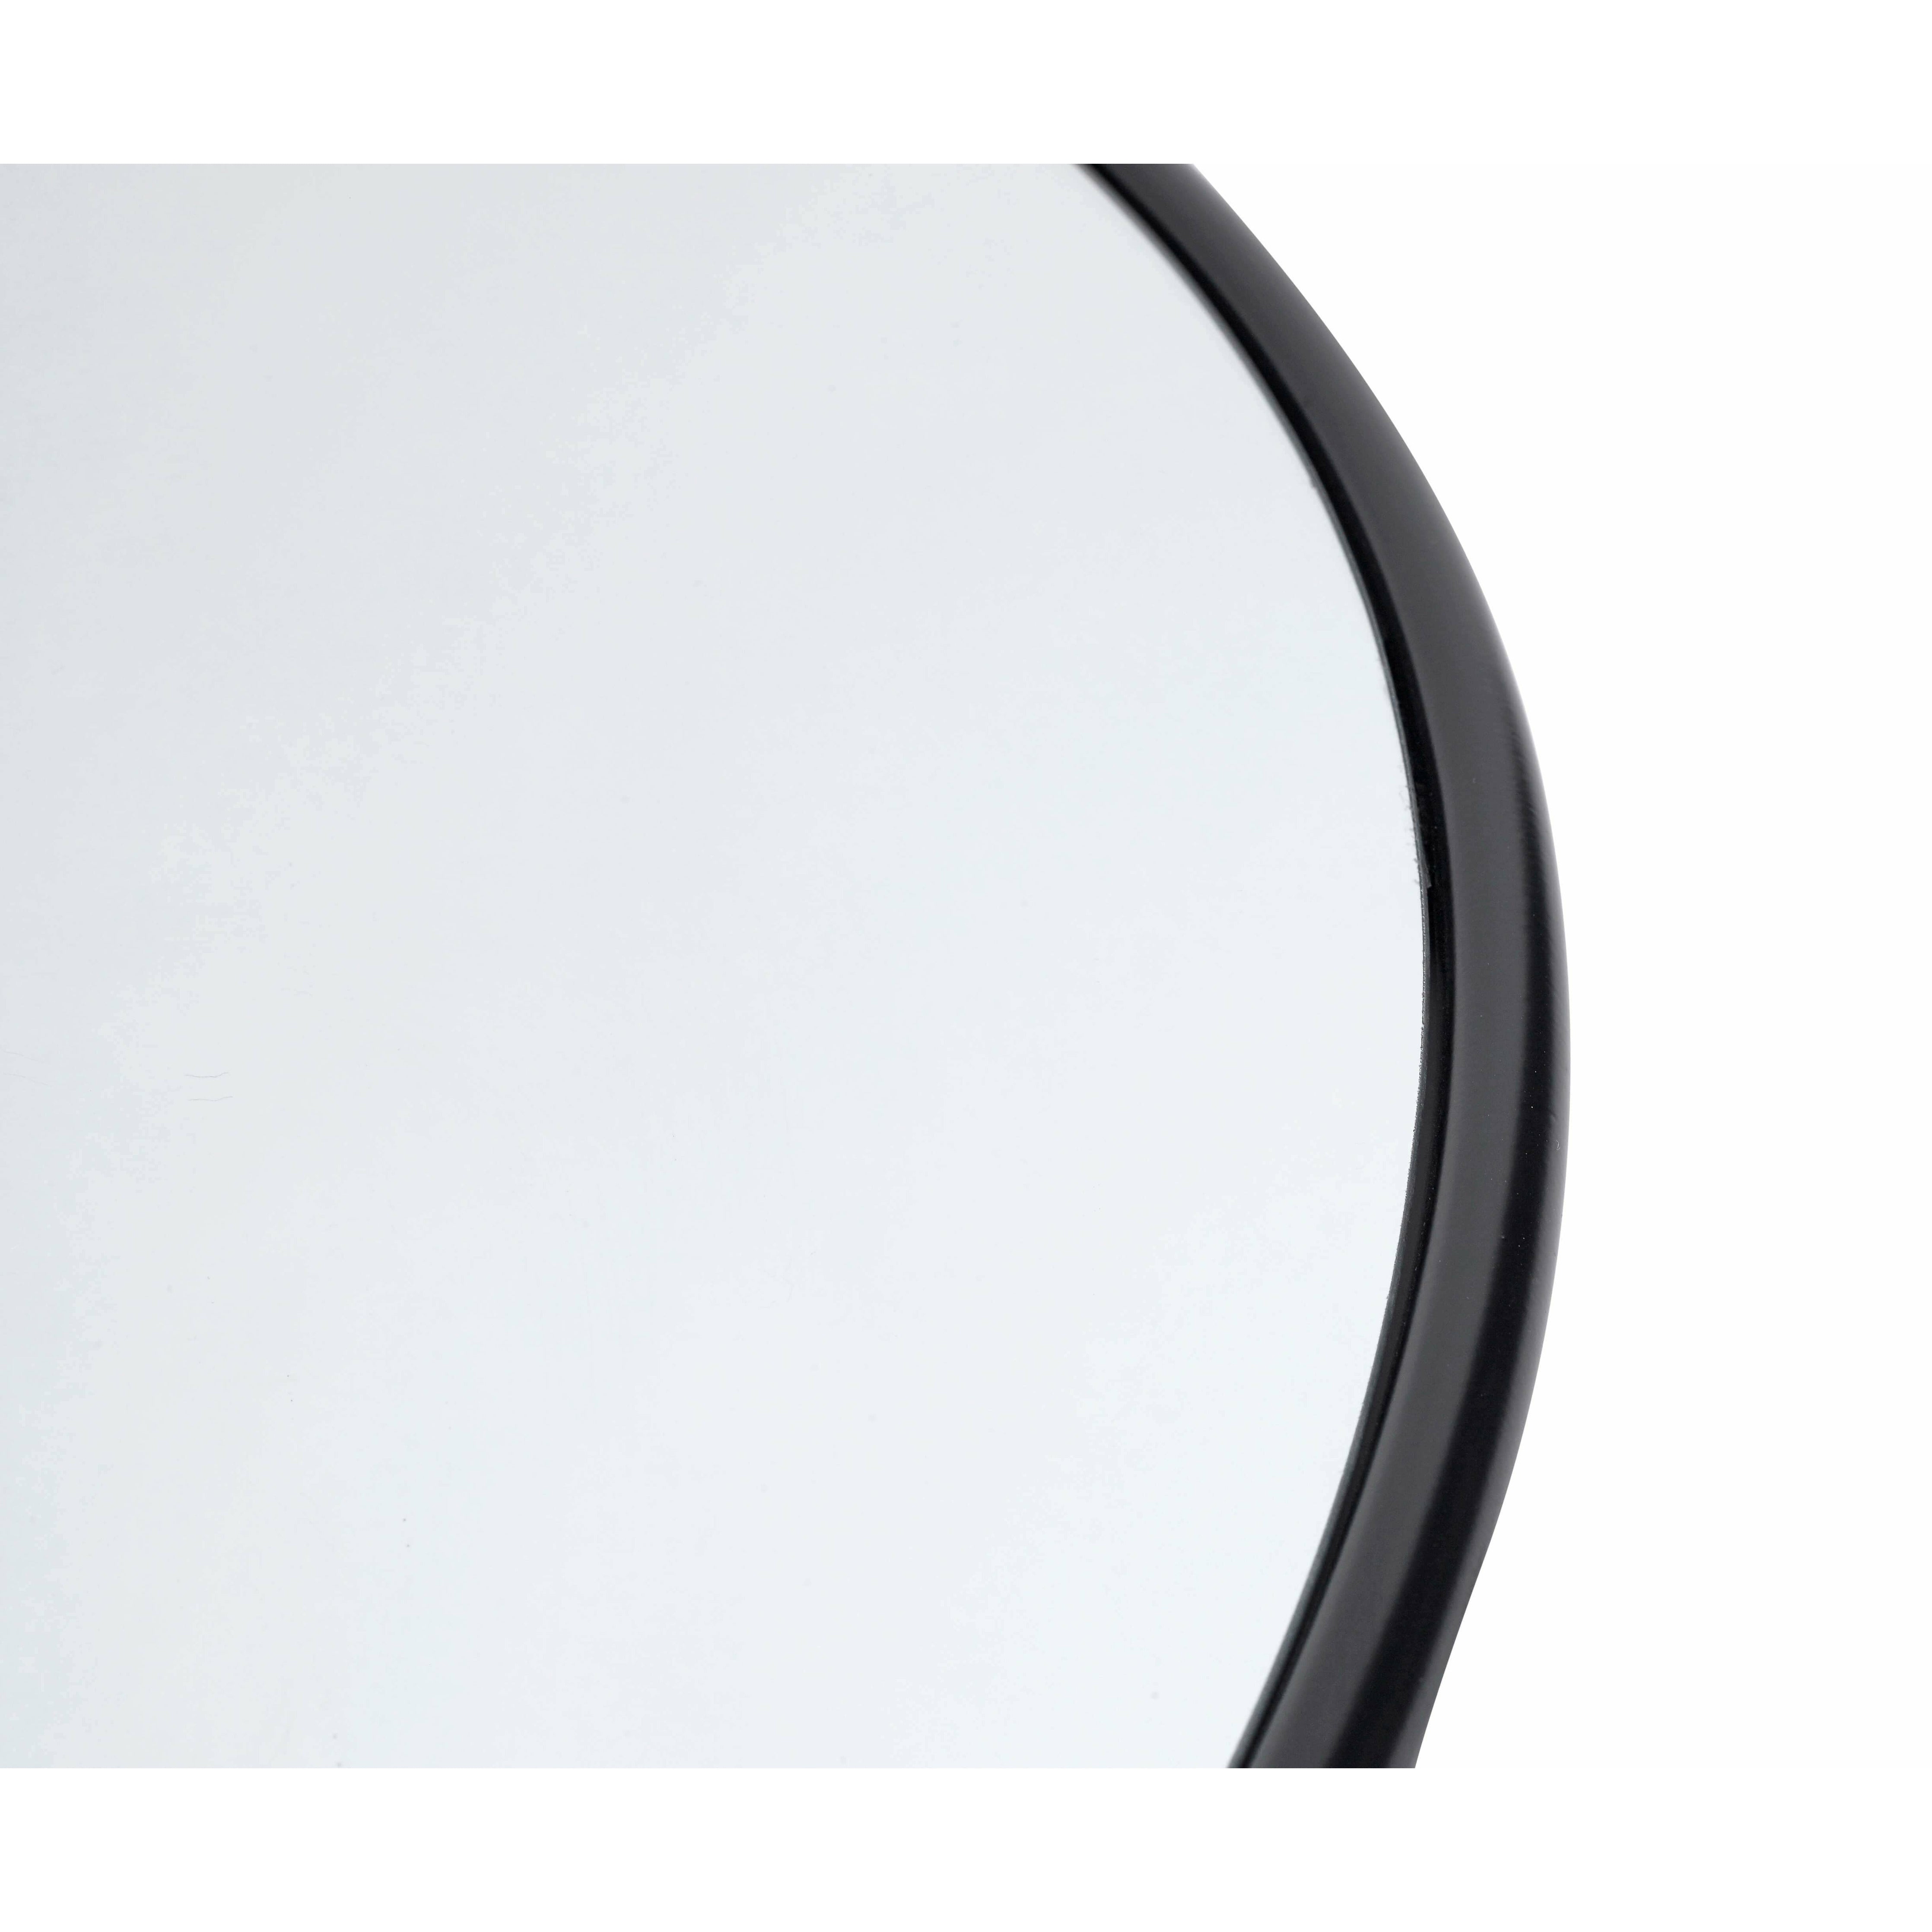 Muubs Kopenhagen Mirror Round Black, 110 cm